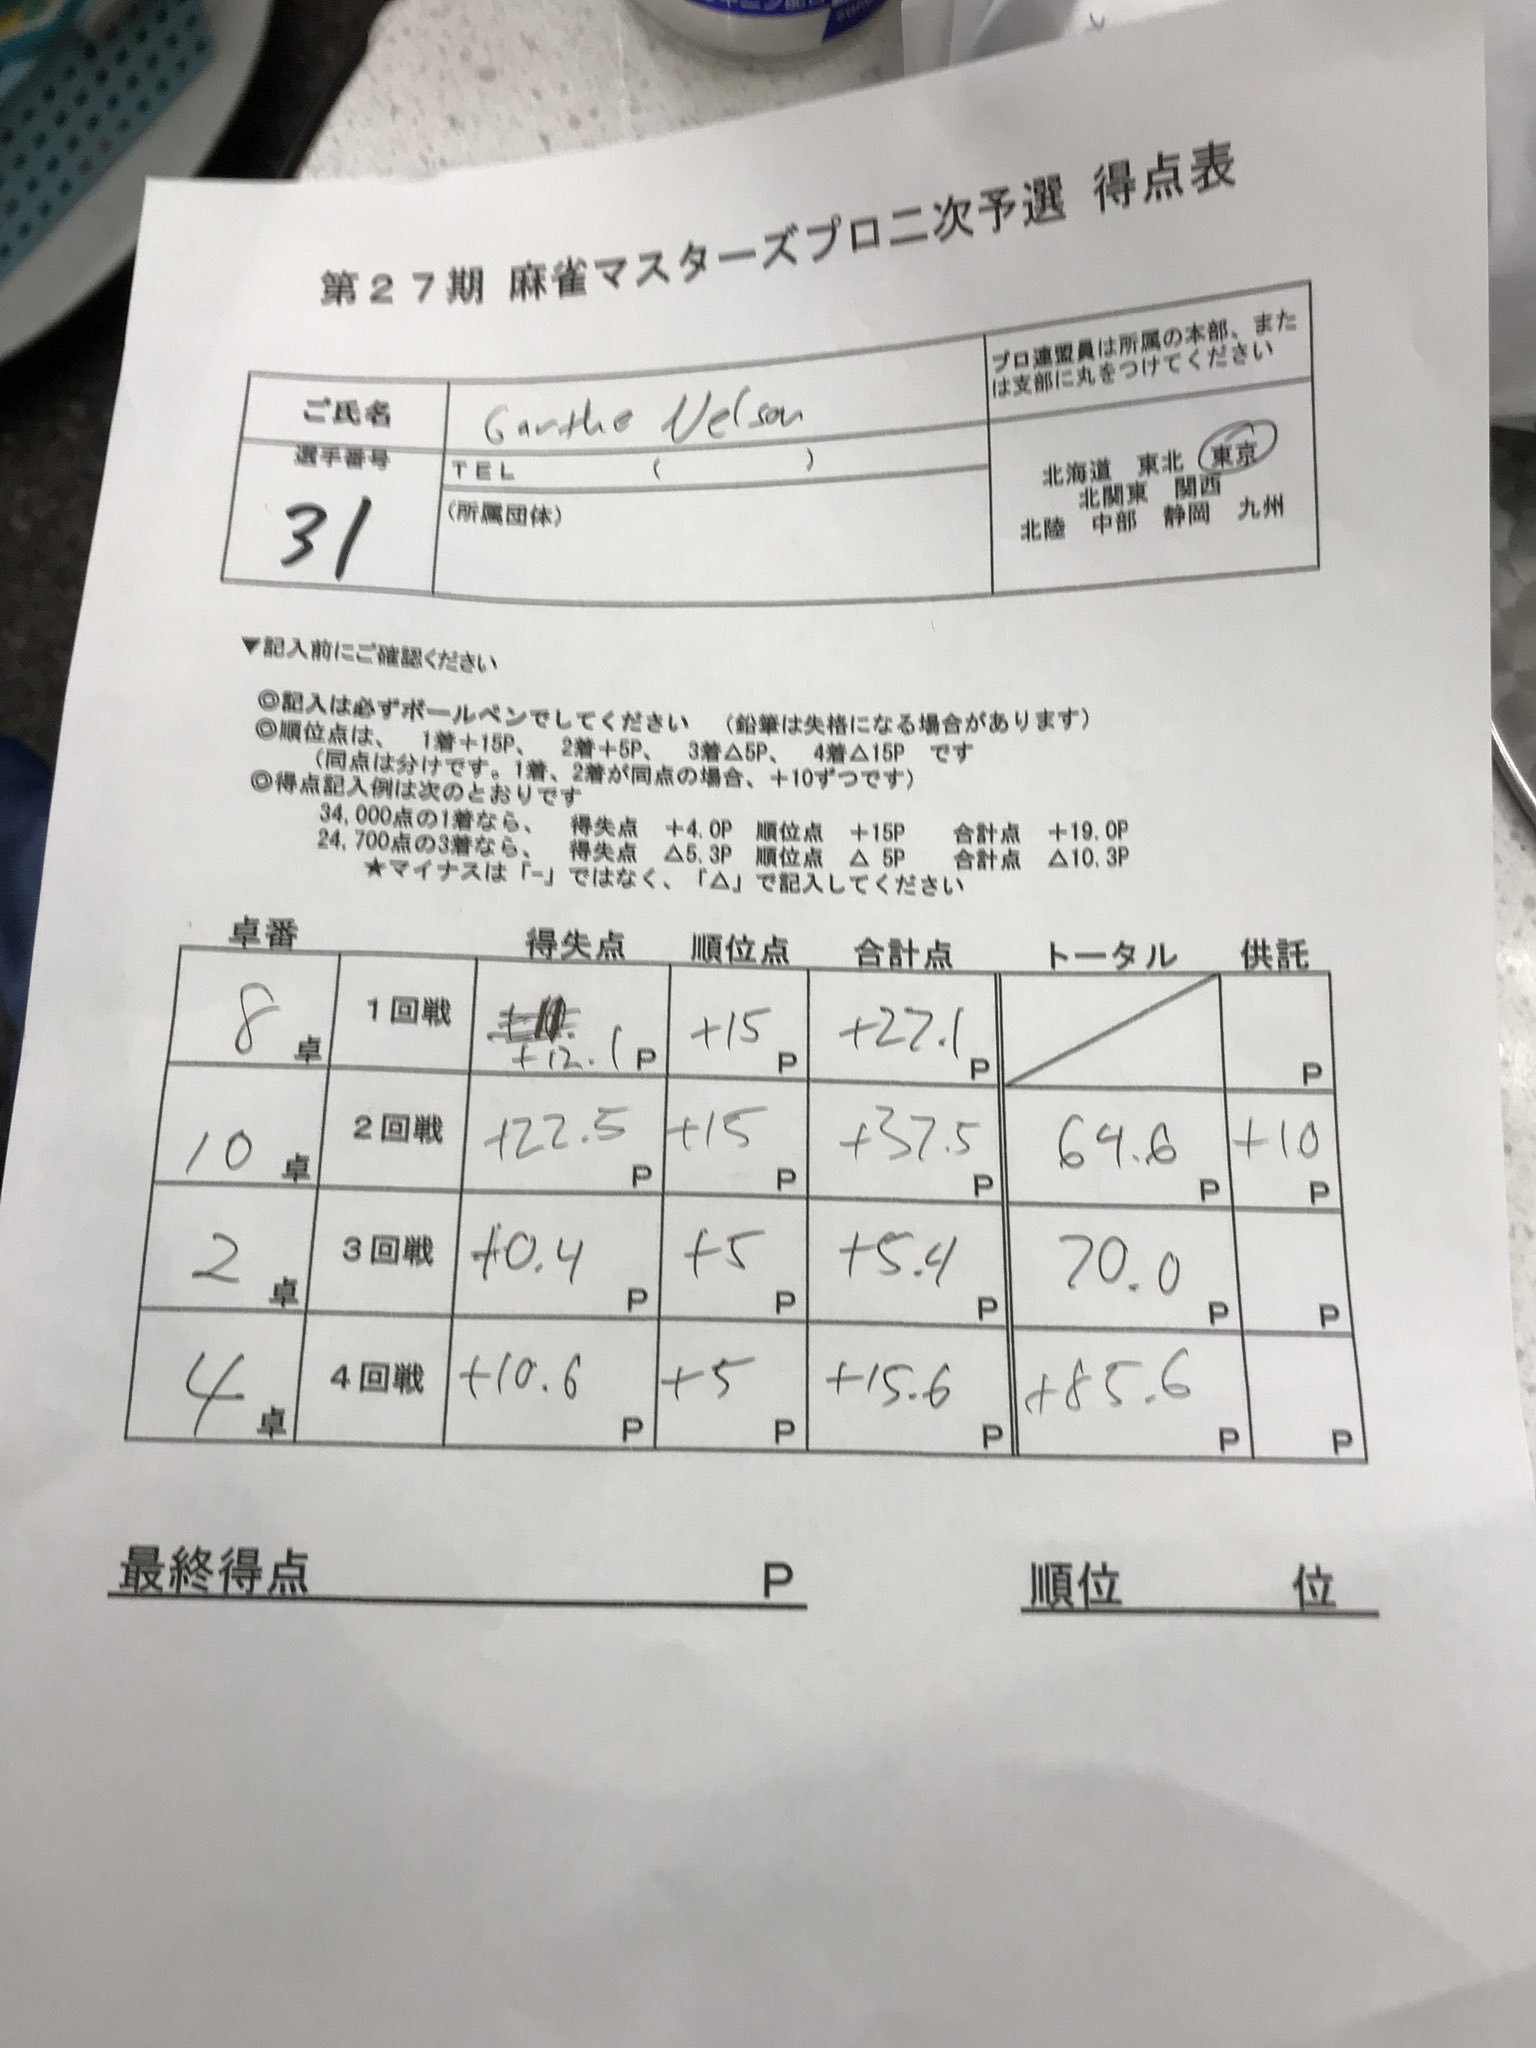 Jpml Tournament Scoresheets Mahjong Gem